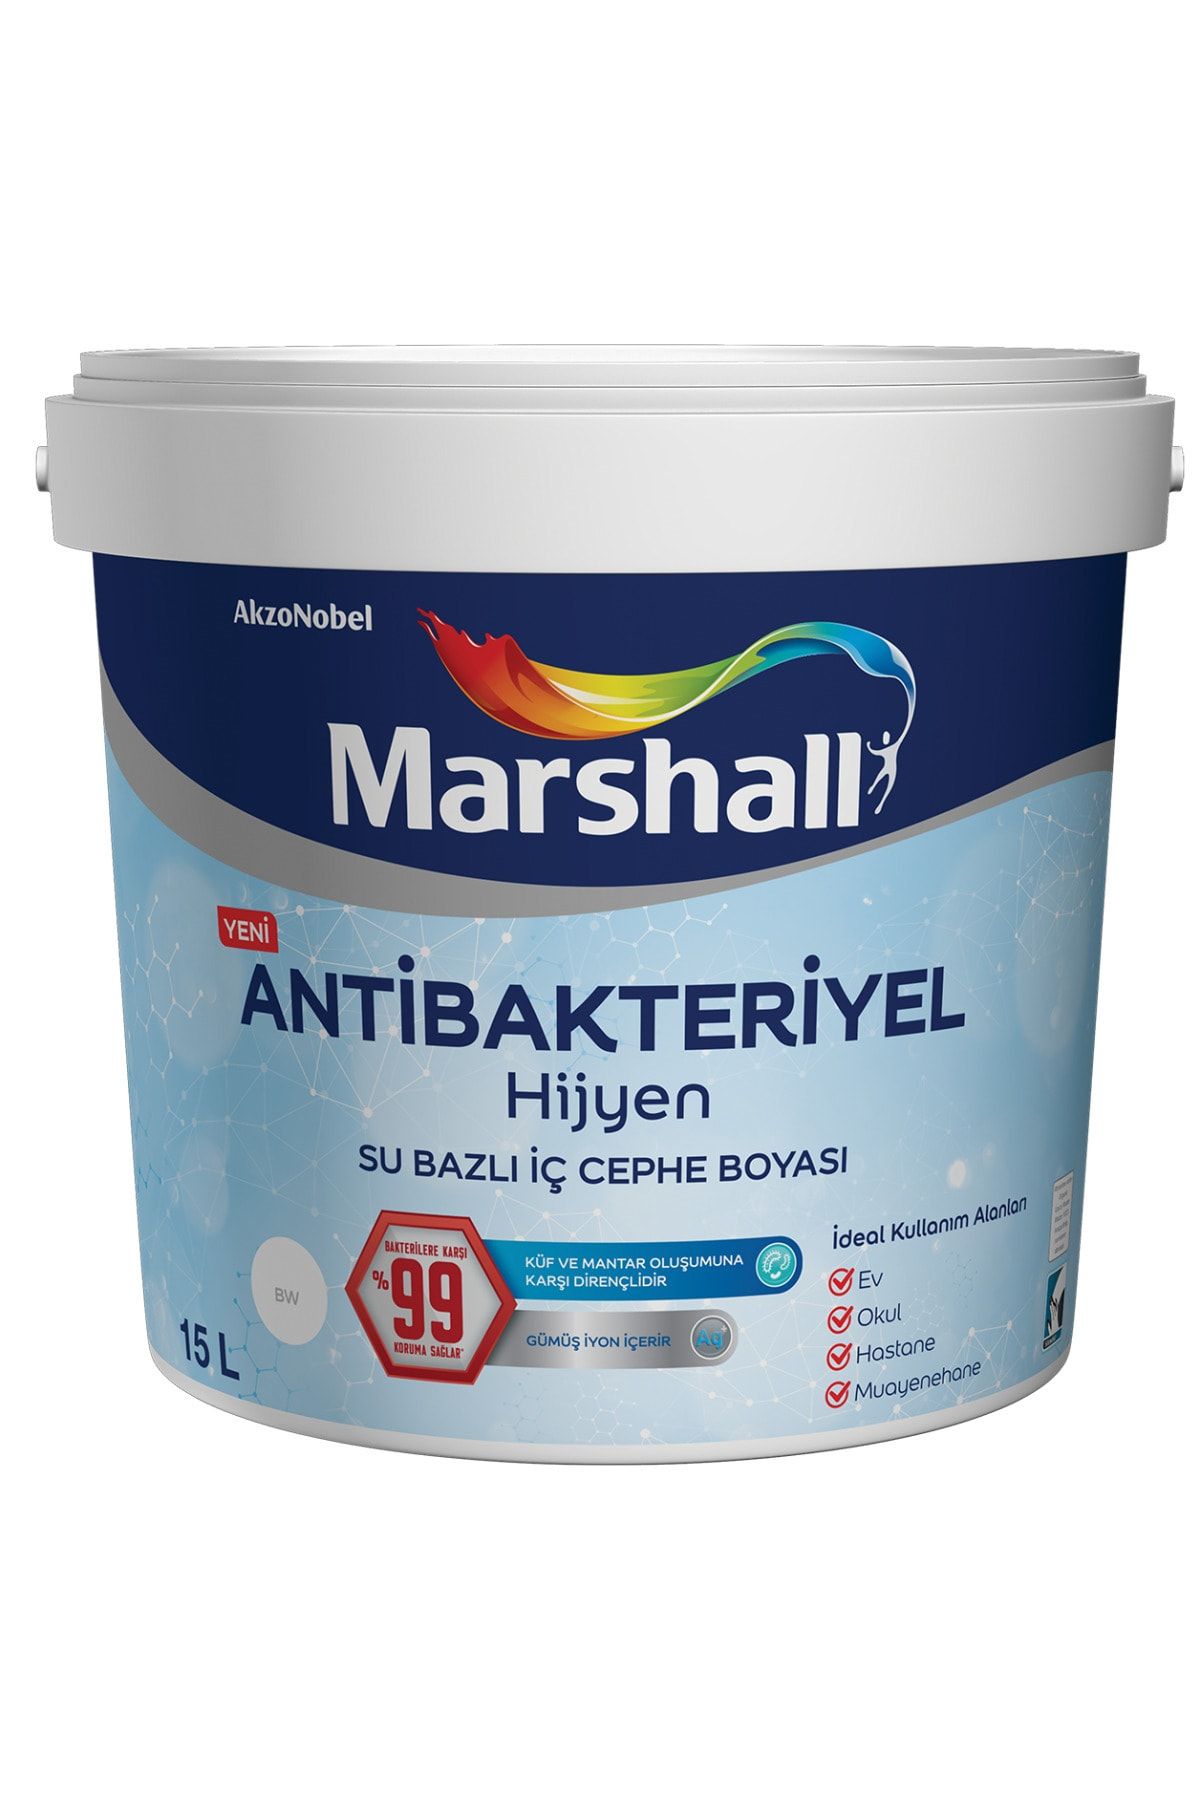 Marshall Antibakteriyel Hijyen Ipek Mat Iç Cephe Boyası Damla Sakızı 15 Lt. (20 Kg)